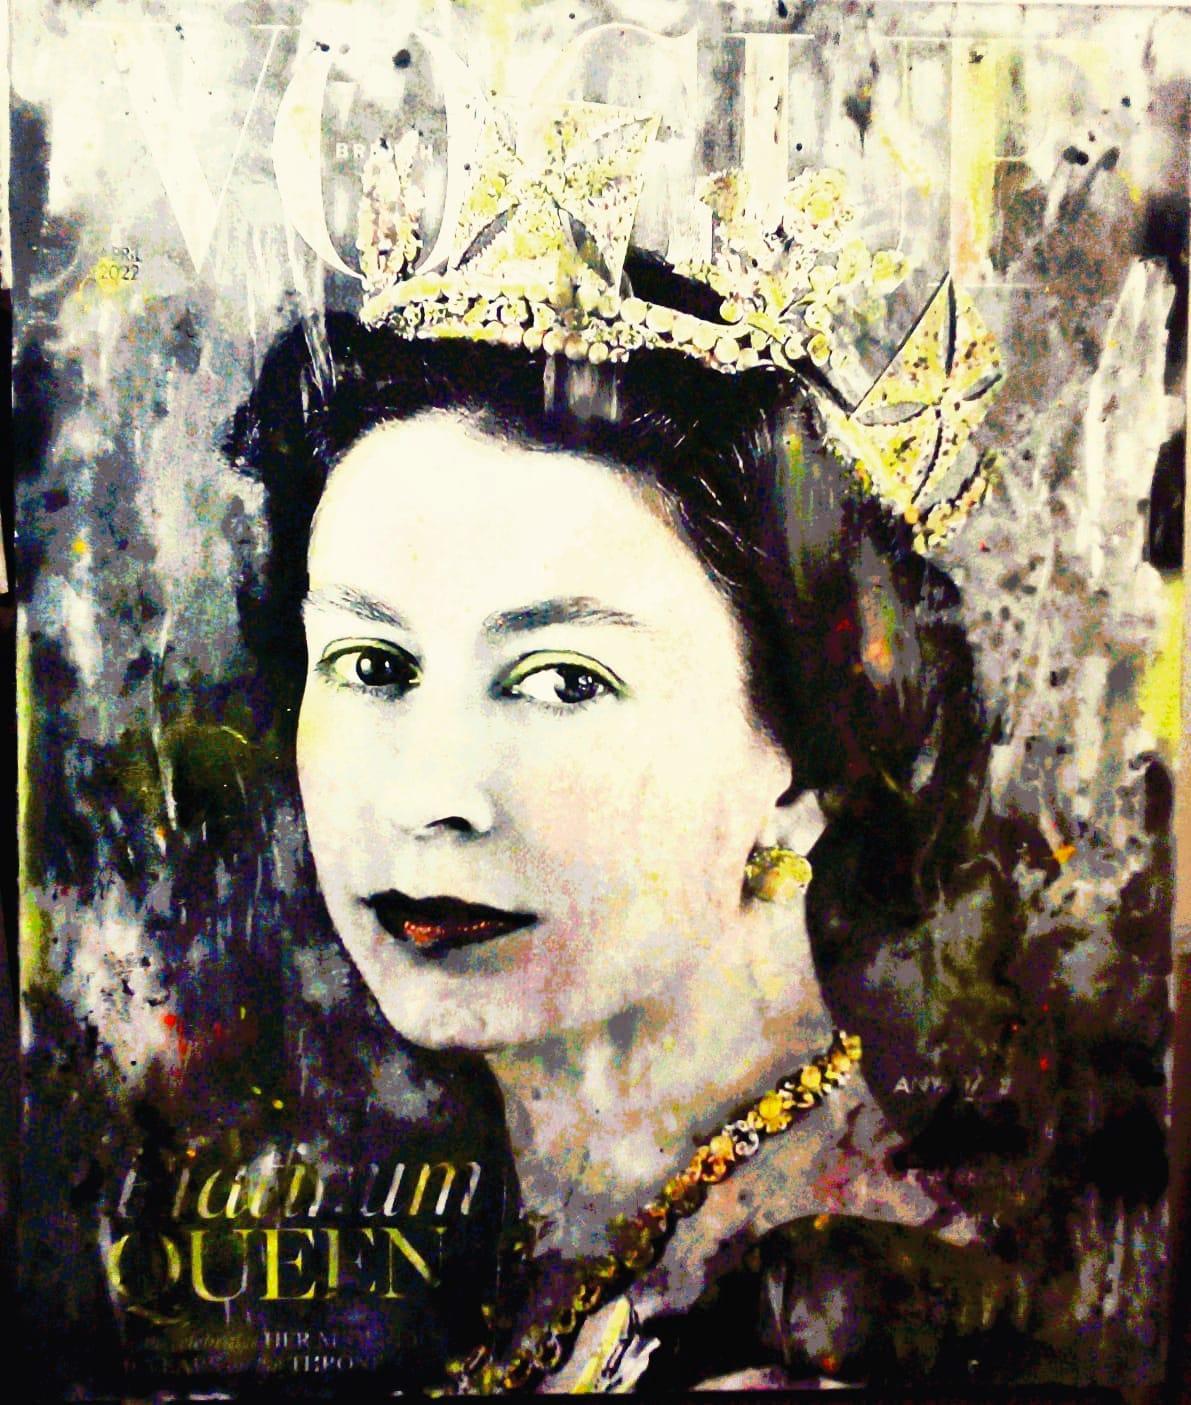 La reine Élisabeth II, peinte par l'artiste Anna Bianchi, née à Lucques où elle vit et travaille, reproduit des artistes, des stars et des personnages emblématiques de l'époque contemporaine. 
La reine Elizabeth avec son style personnel .
Je suis